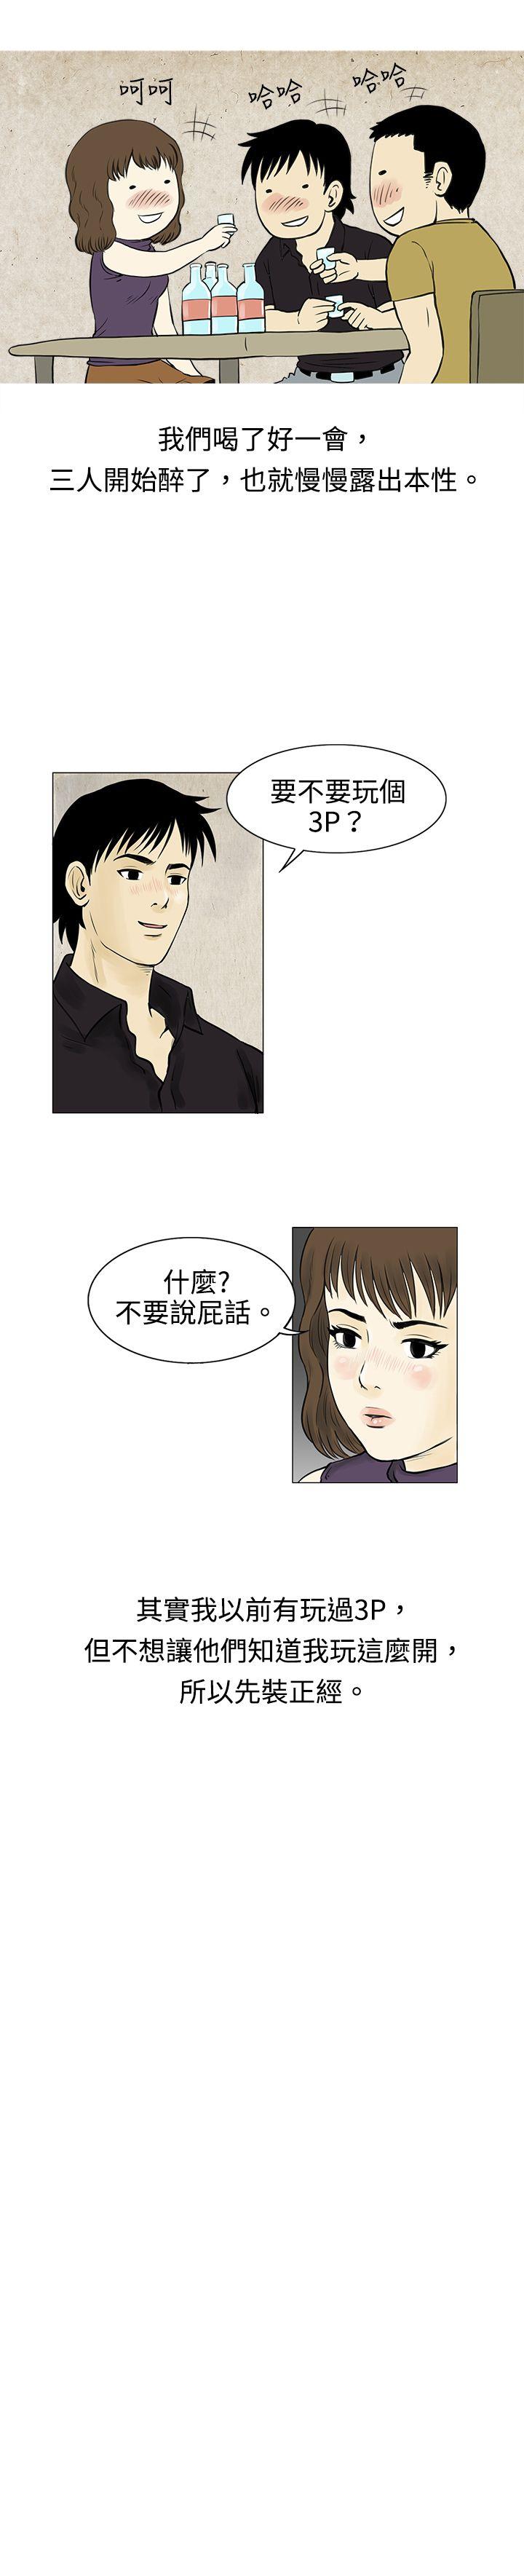 韩国污漫画 秘密Story 遇到渣男的旅馆逃亡记(下) 3